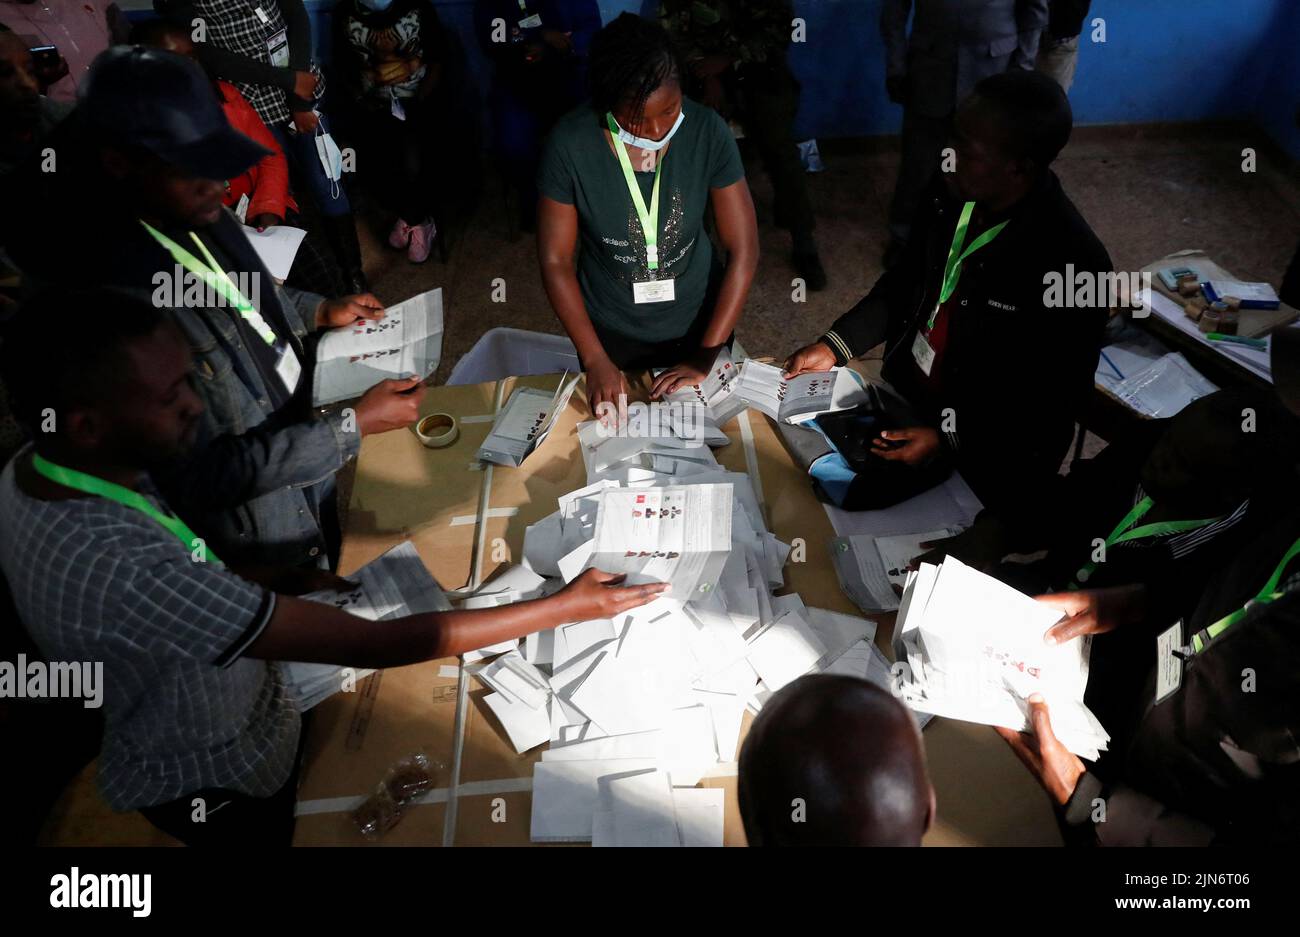 Los funcionarios electorales clasifican las papeletas de votación durante las elecciones generales realizadas por la Comisión Electoral Independiente y de Fronteras (IEBC) al final del proceso de votación en la Escuela Primaria Moi Avenue en Nairobi, Kenia, el 9 de agosto de 2022. REUTERS/Thomas Mukoya Foto de stock